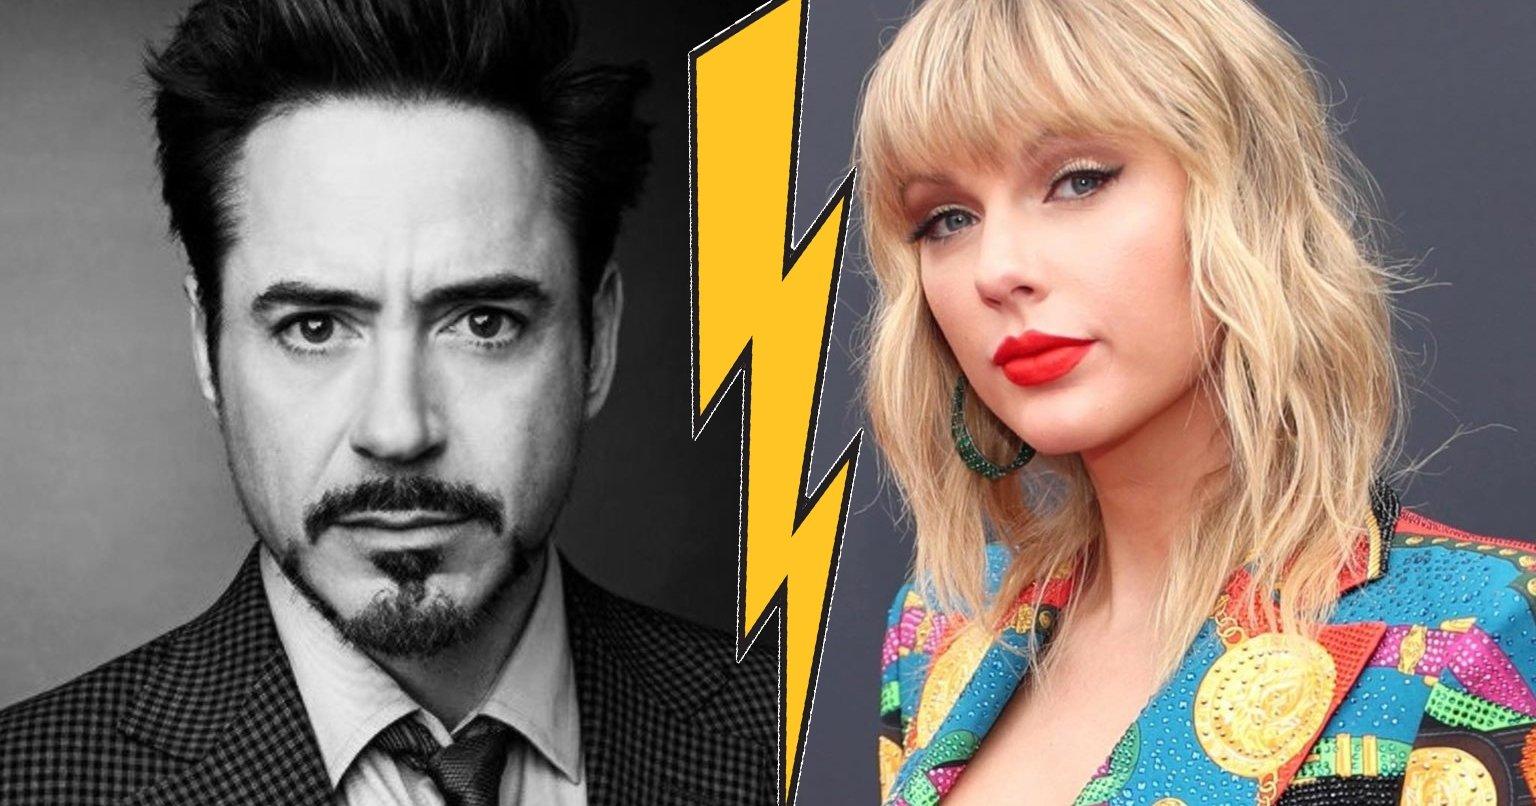 Chính scandal của Iron Man và Taylor Swift đã khiến điểm phim Bác Sỹ Dolittle thấp tệ hại?